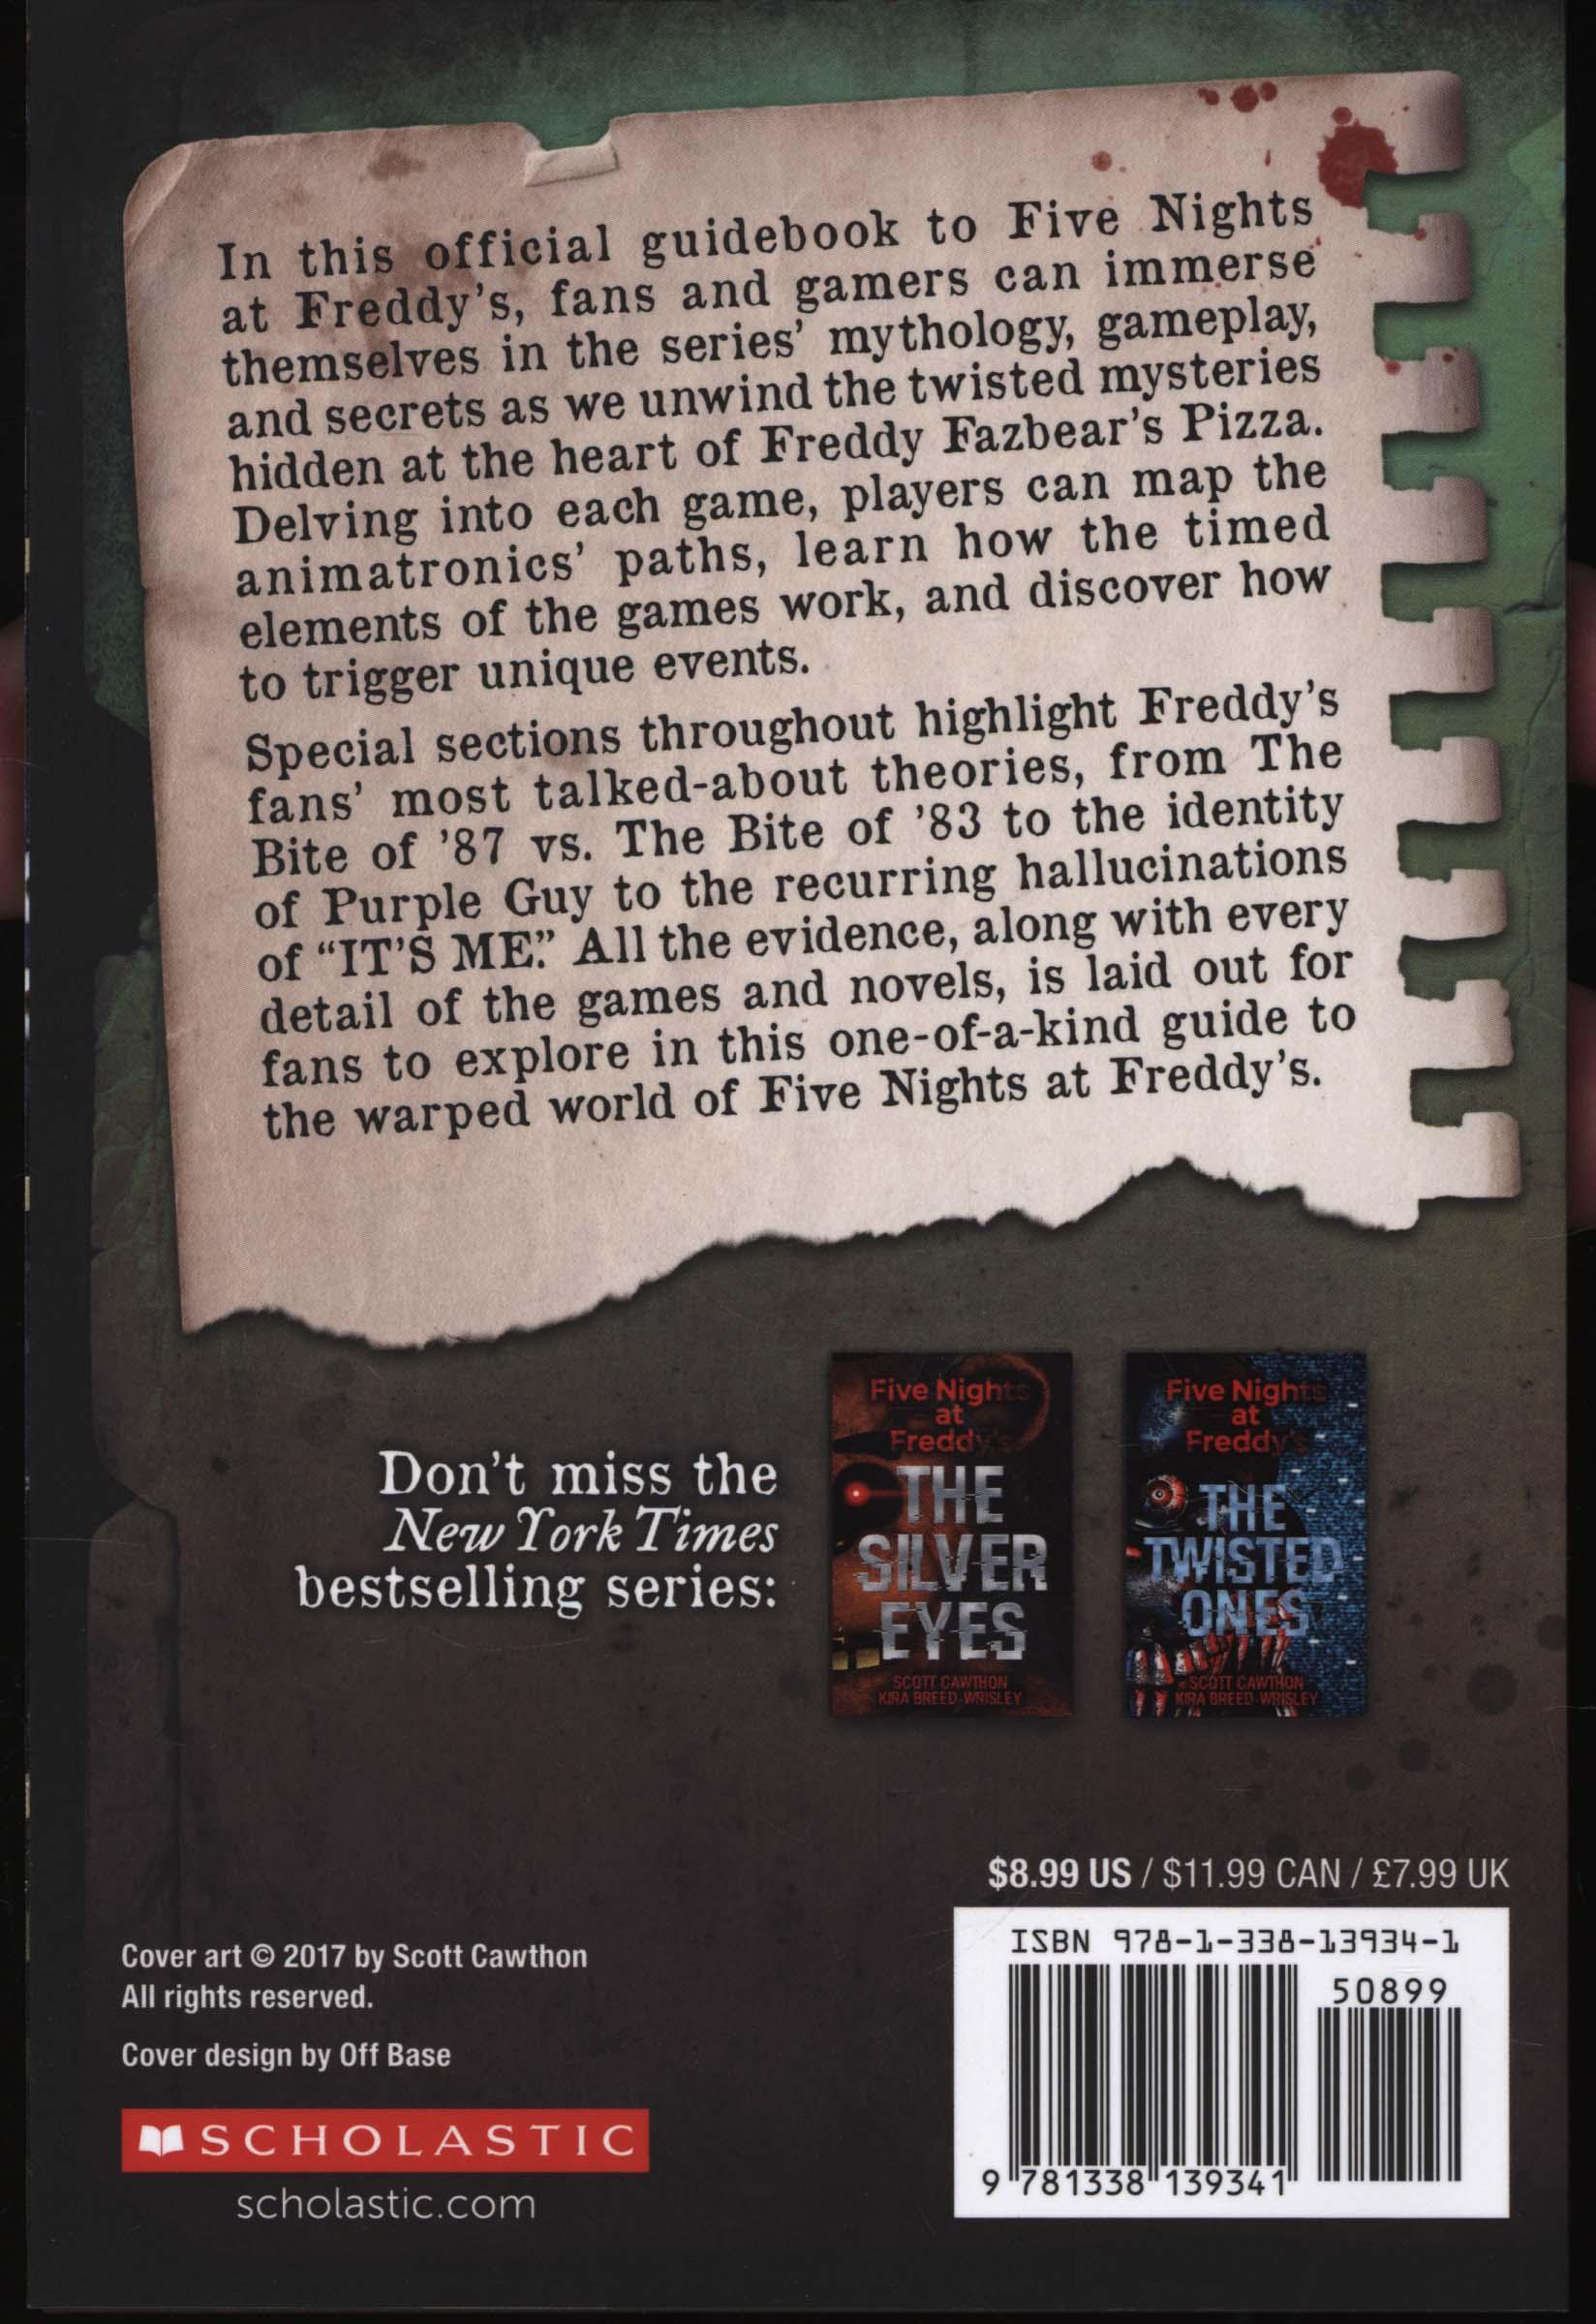 Freddy Files